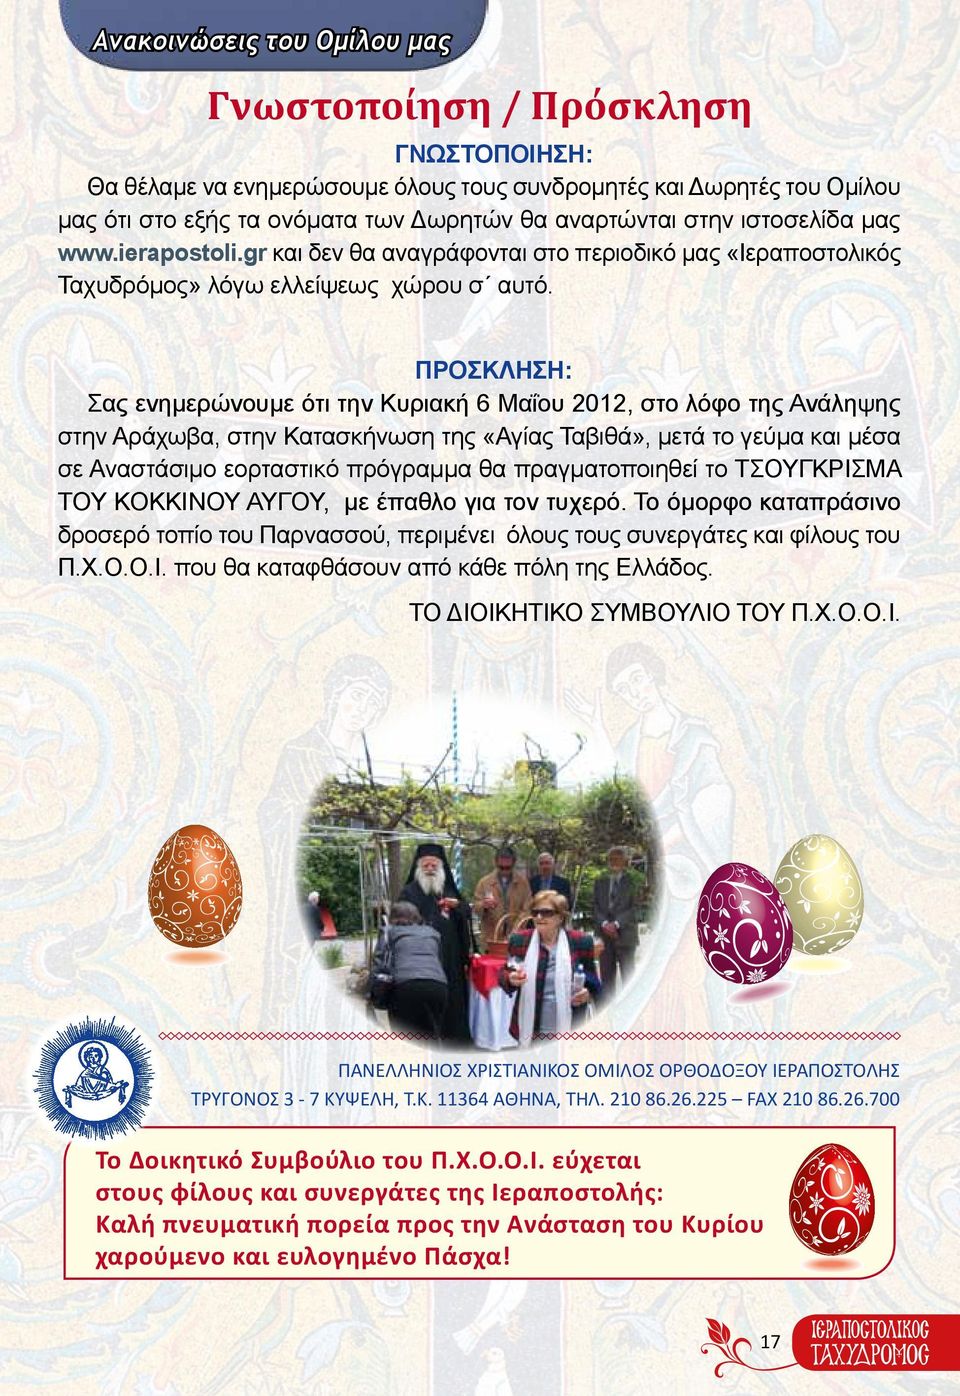 ΠΡΟΣΚΛΗΣΗ: Σας ενημερώνουμε ότι την Κυριακή 6 Μαΐου 2012, στο λόφο της Ανάληψης στην Αράχωβα, στην Κατασκήνωση της «Αγίας Ταβιθά», μετά το γεύμα και μέσα σε Αναστάσιμο εορταστικό πρόγραμμα θα